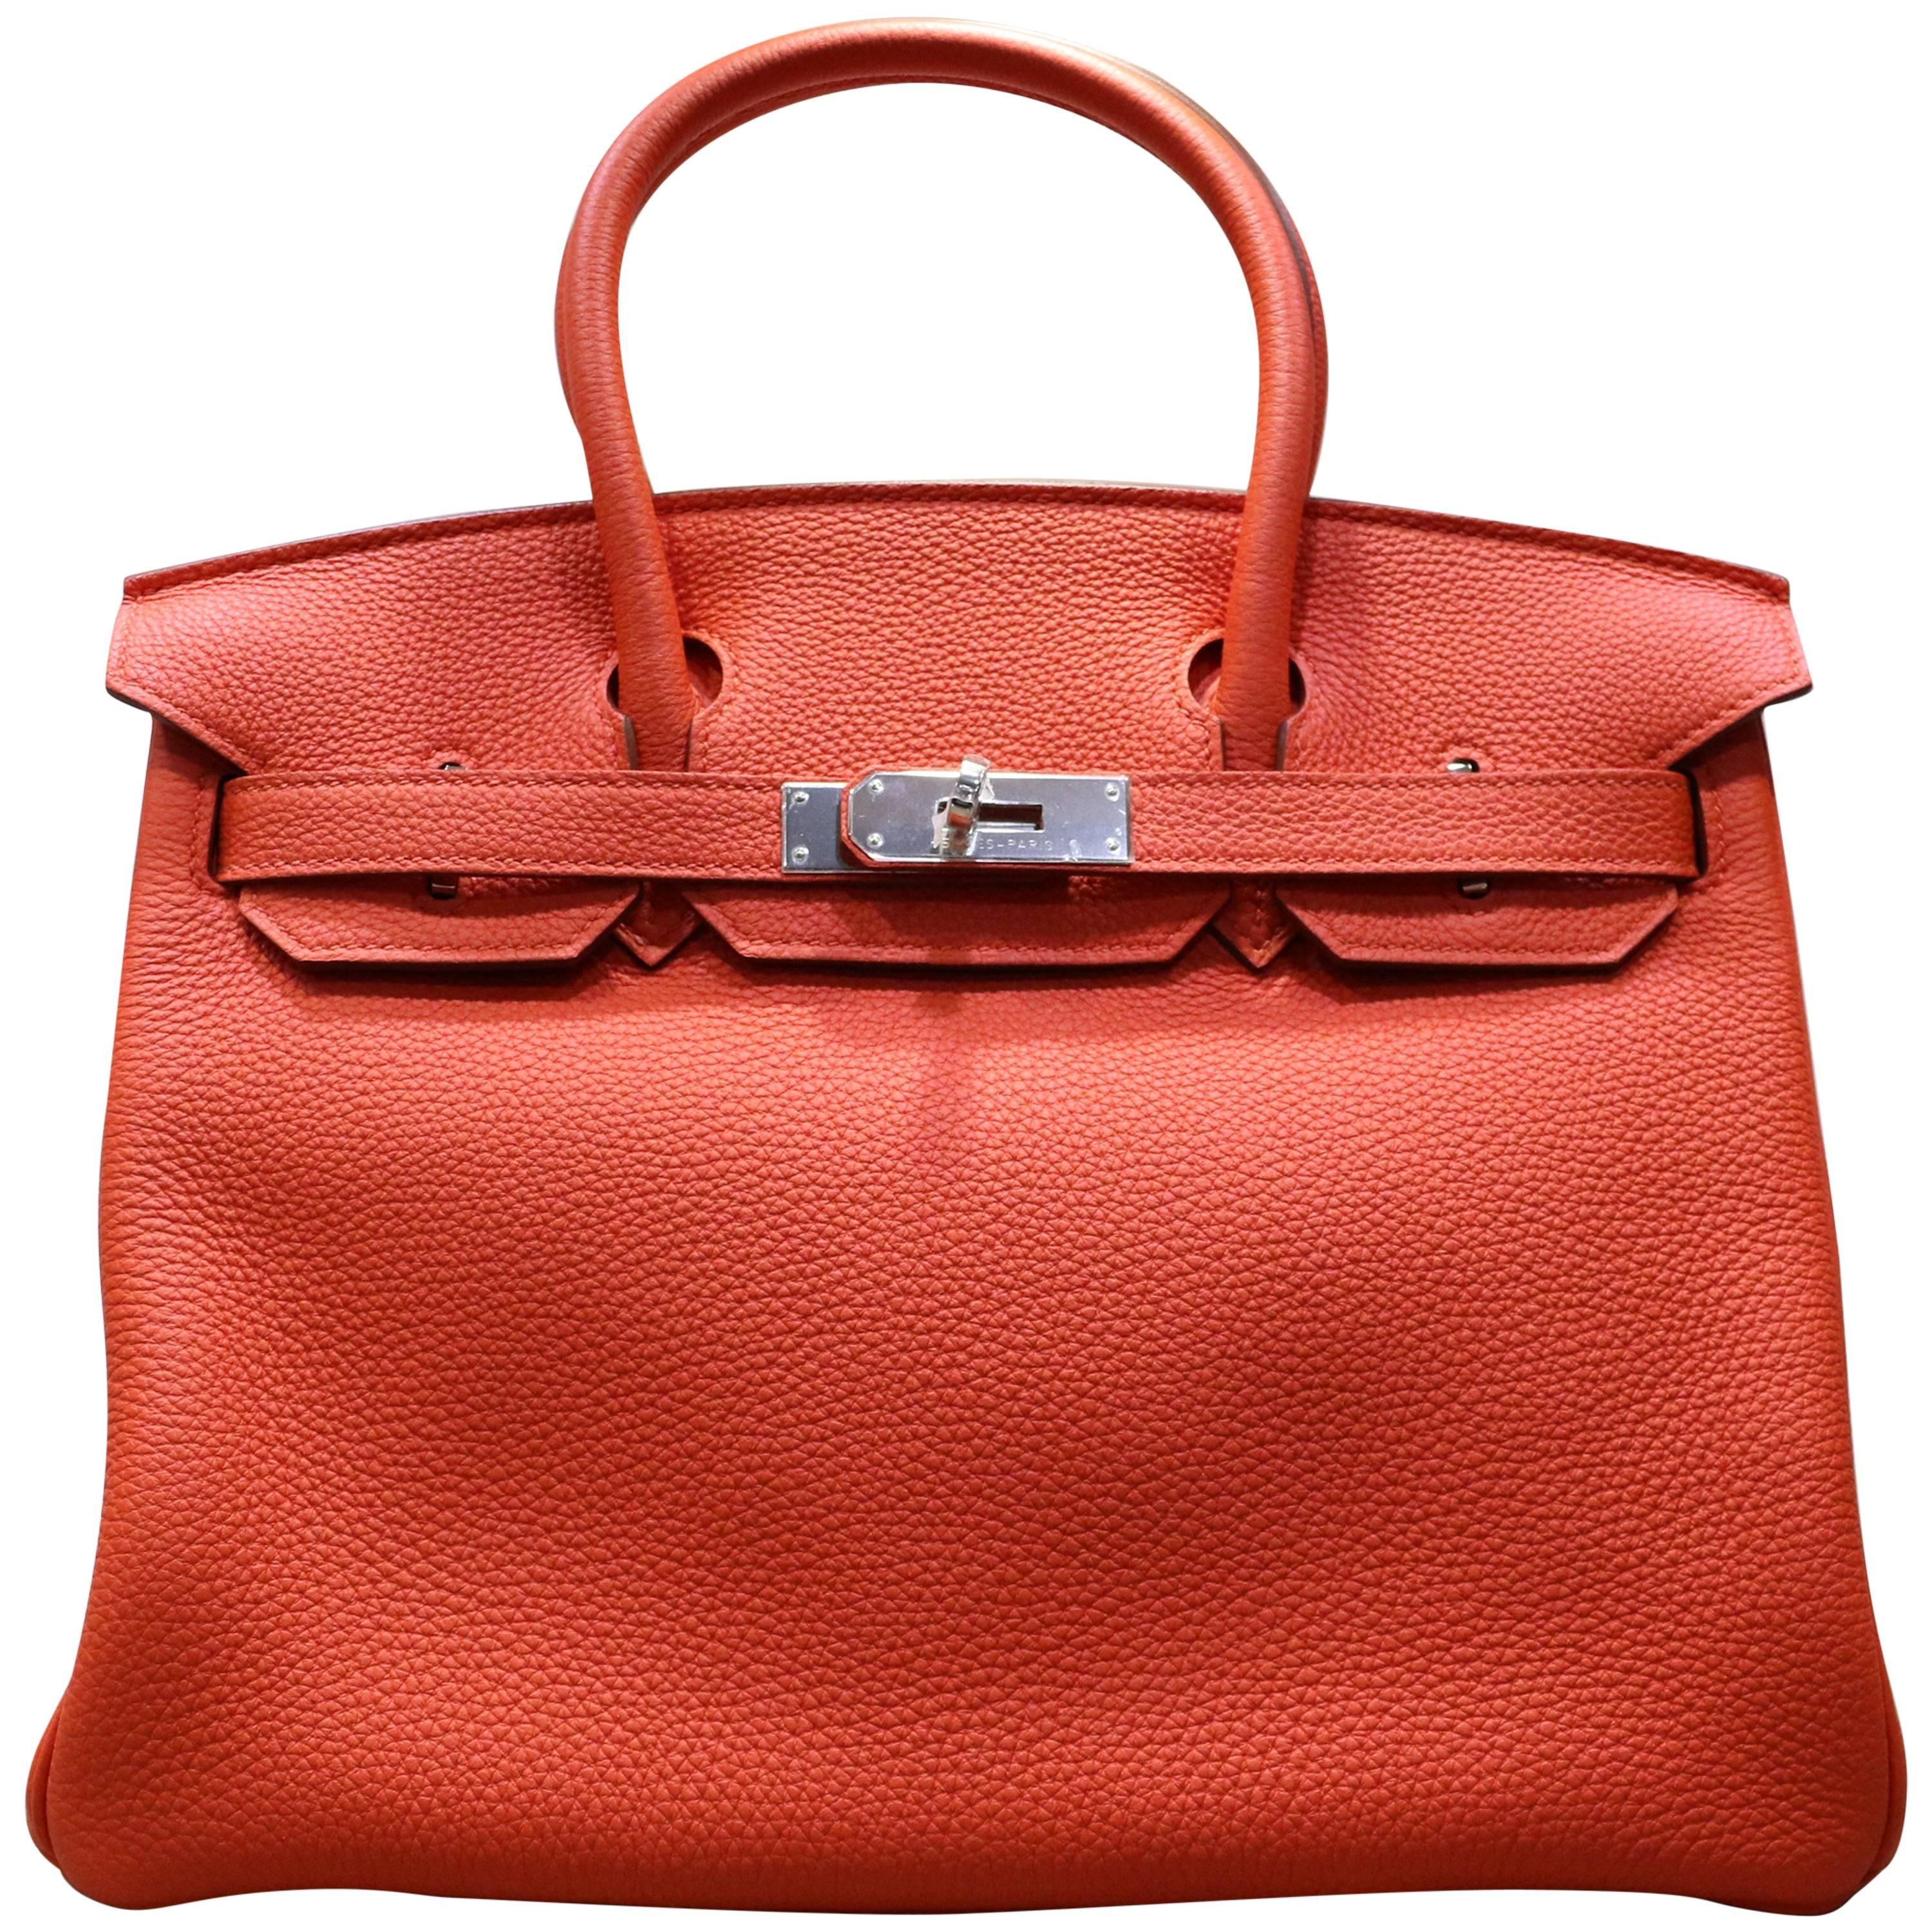 Hermes Birkin Red 30cm Togo Leather Bag